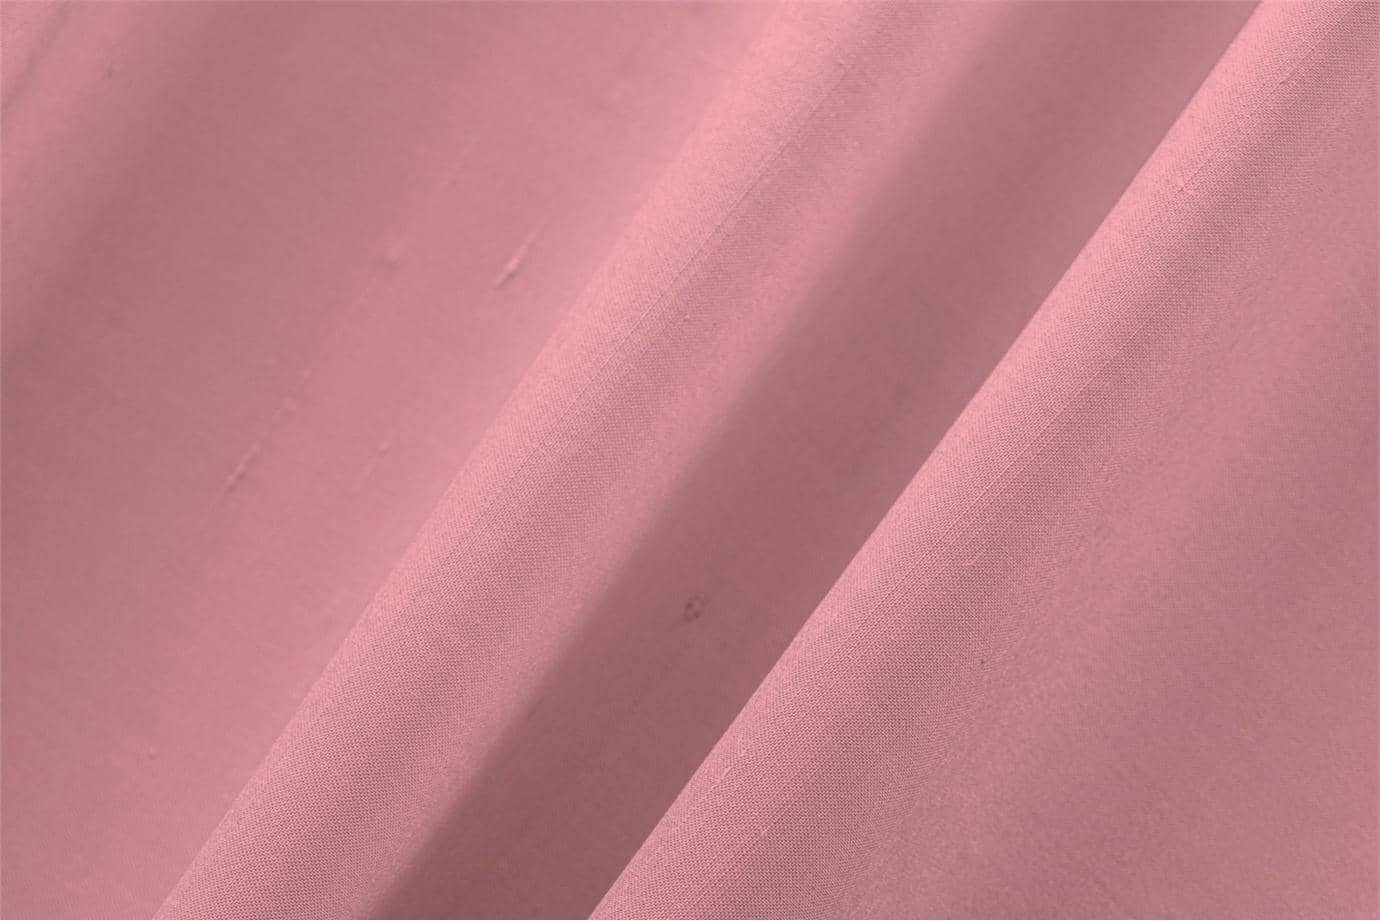 Tissu Double Shantung Rose oléandre en Coton, Soie pour vêtements